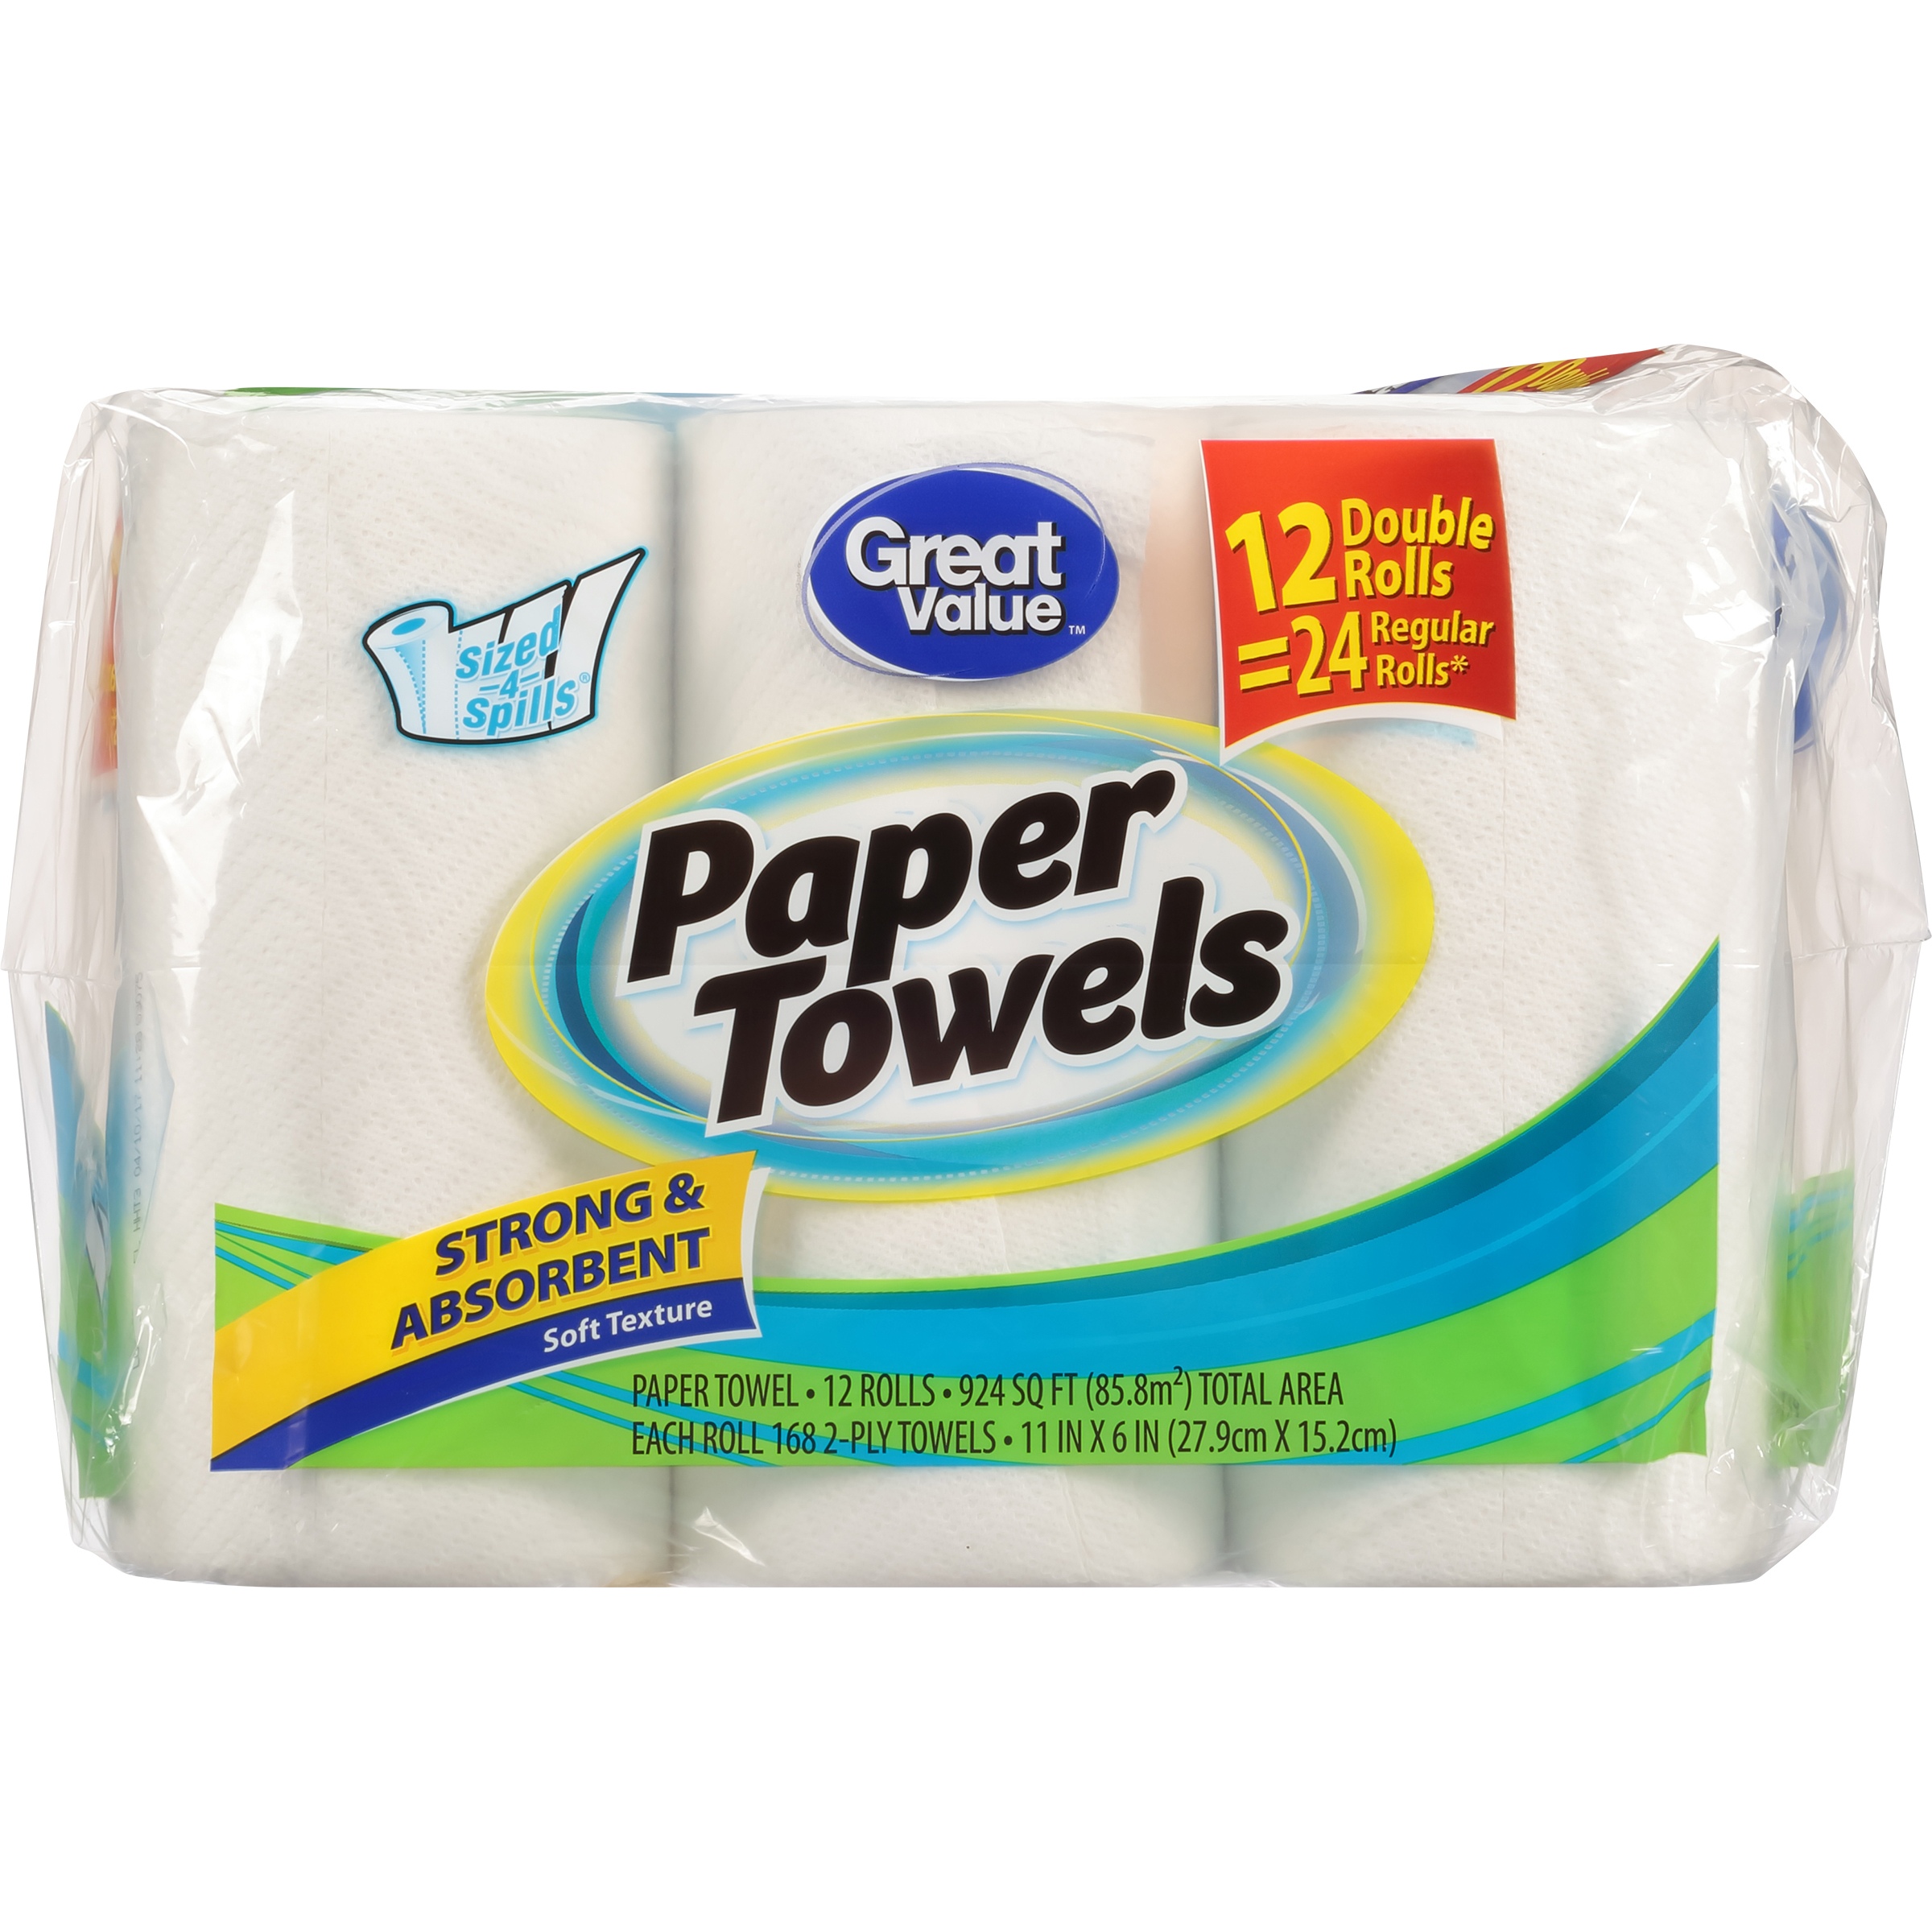 Paper Towel Black Friday Deals